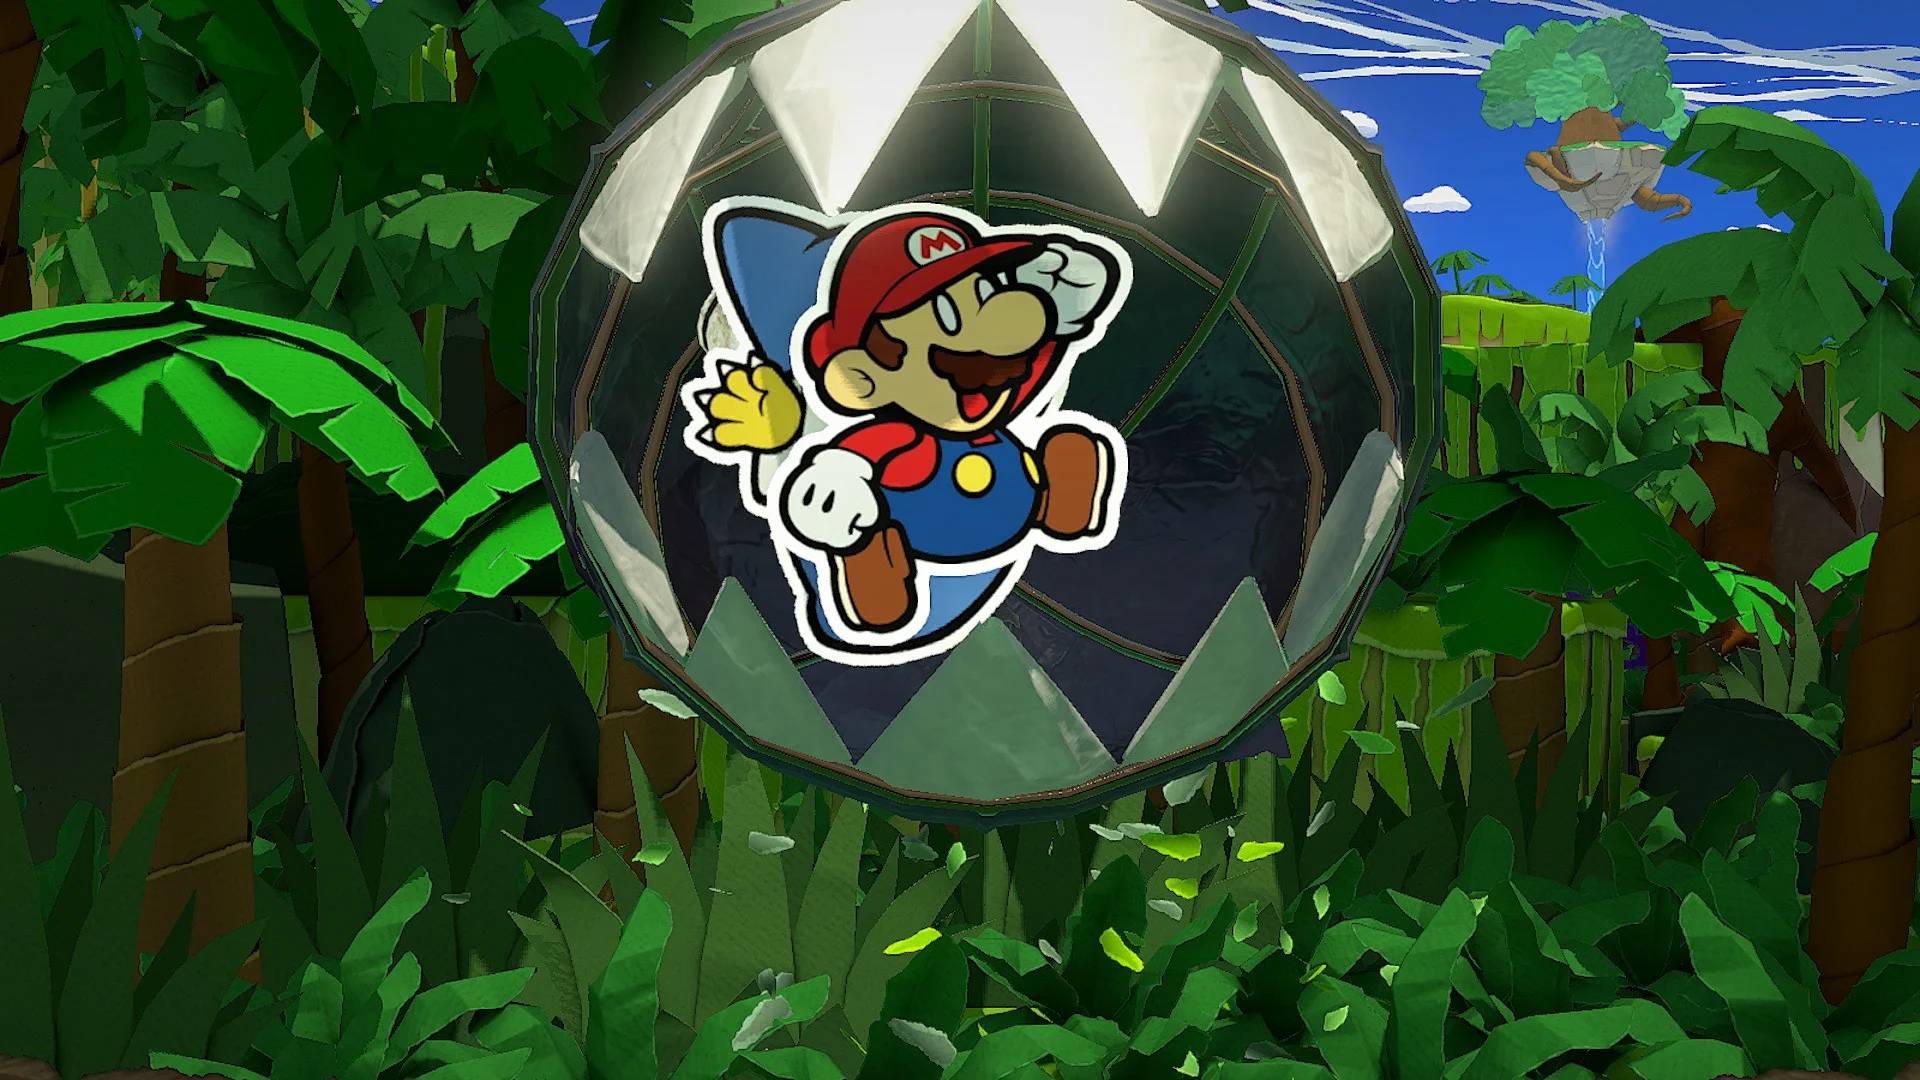 Jogos engraçados: Paper Mario e Paper Kami saltam no ar, mas estão prestes a ser engolidos por uma mordida em cadeia